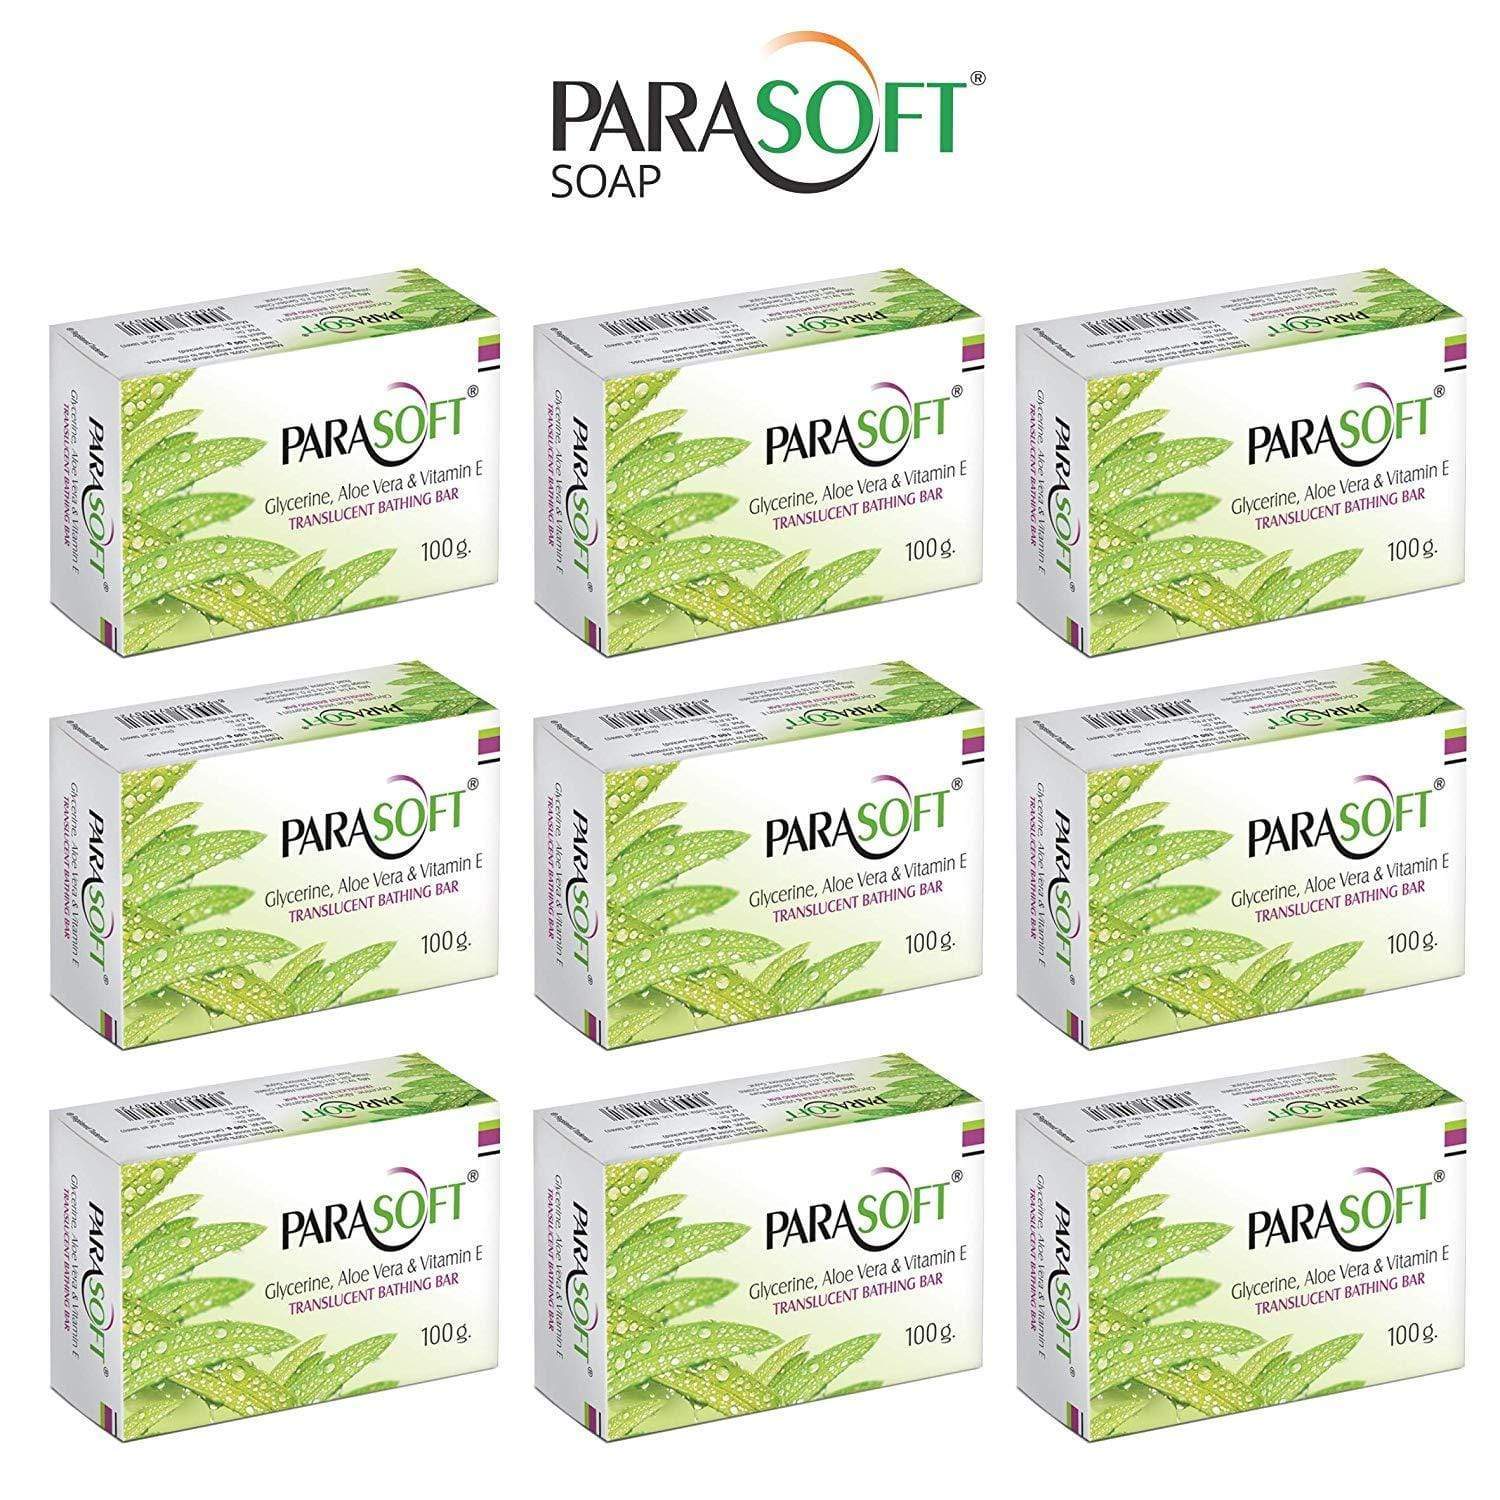 Shoprythm Dry,Parasoft Pack of 9 Salve Parasoft Soap 100g